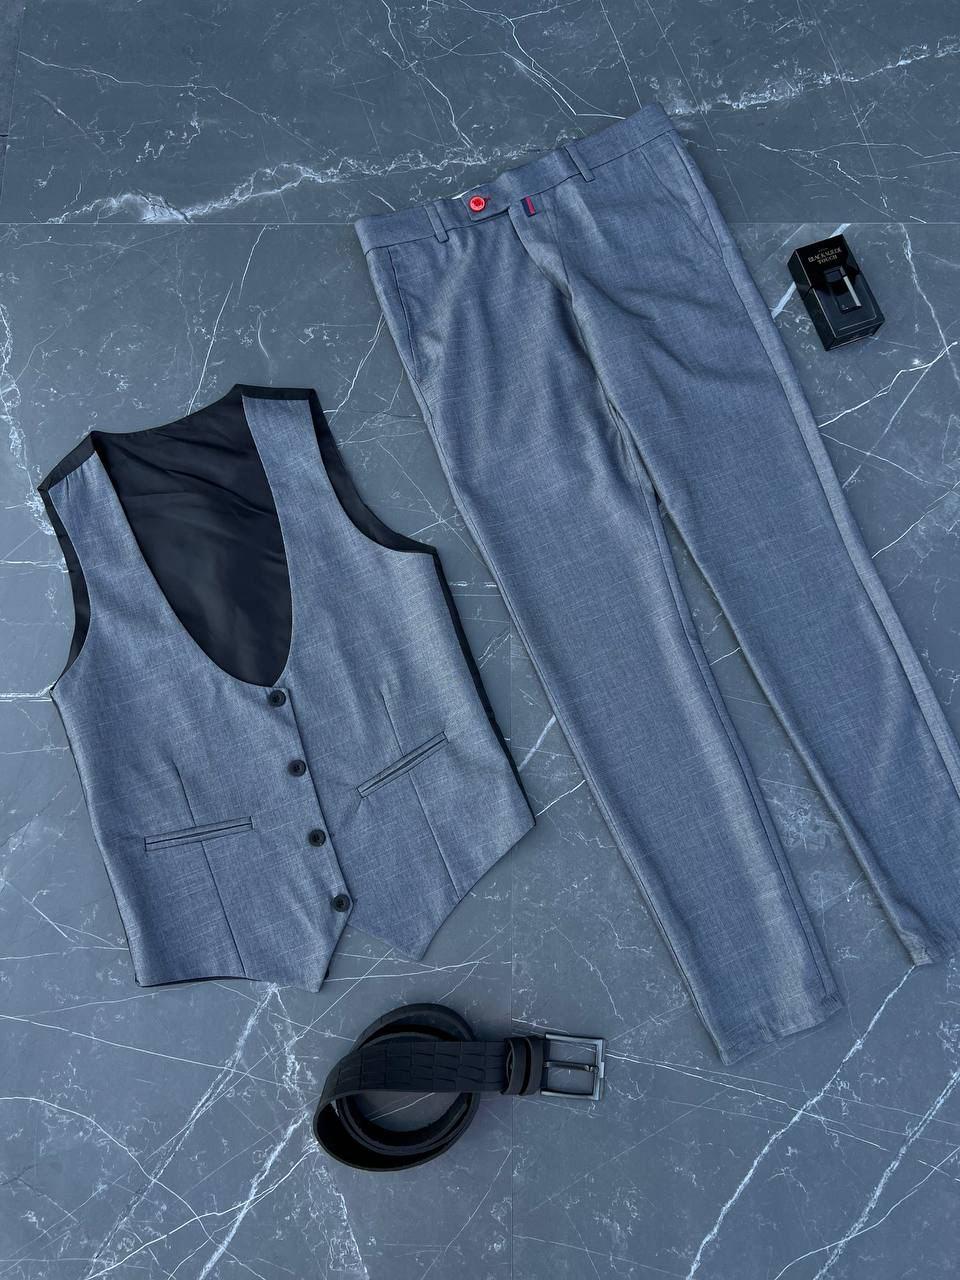 Класичний чоловічий костюм | Сірий костюм для чоловіків (жилетка + штани)